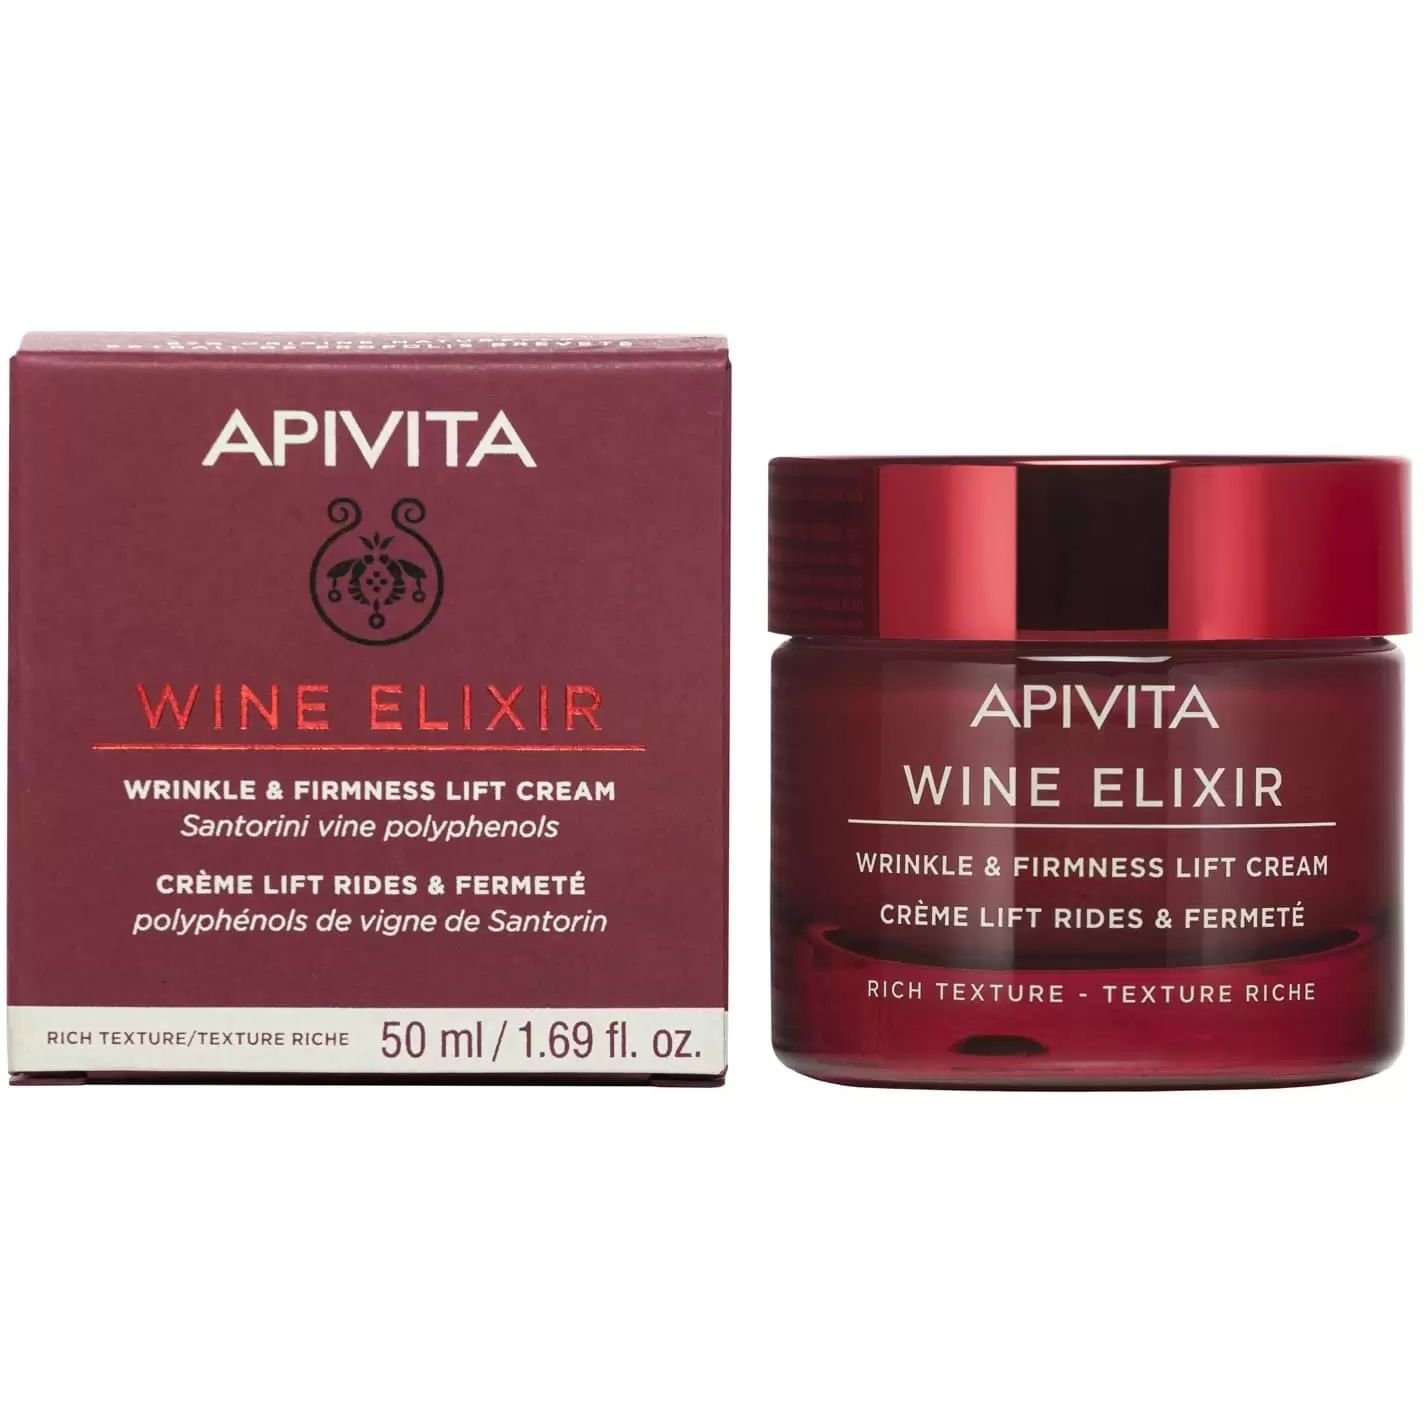 Крем-лифтинг насыщенной текстуры Apivita Wine Elixir для борьбы с морщинами и повышения упругости, 50 мл - фото 2